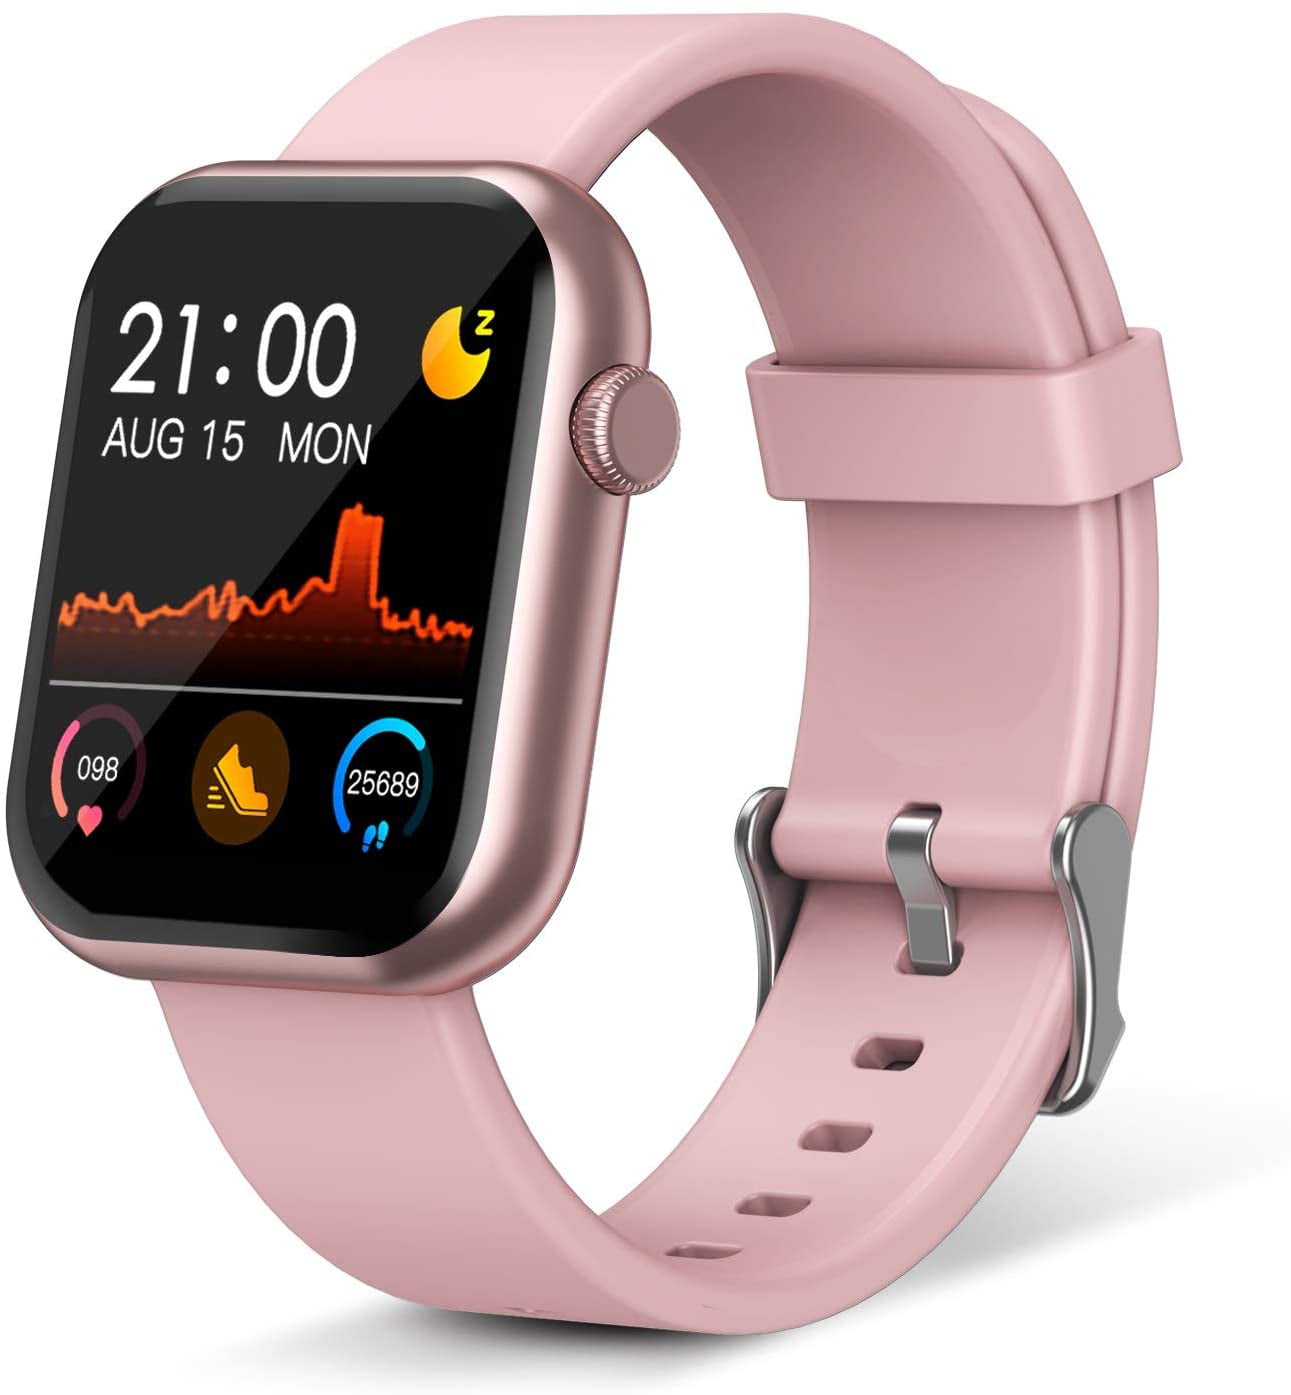 √ 7+ Waterproof Smart Watch For Women Smart Watch,Fitness Tracker With ...